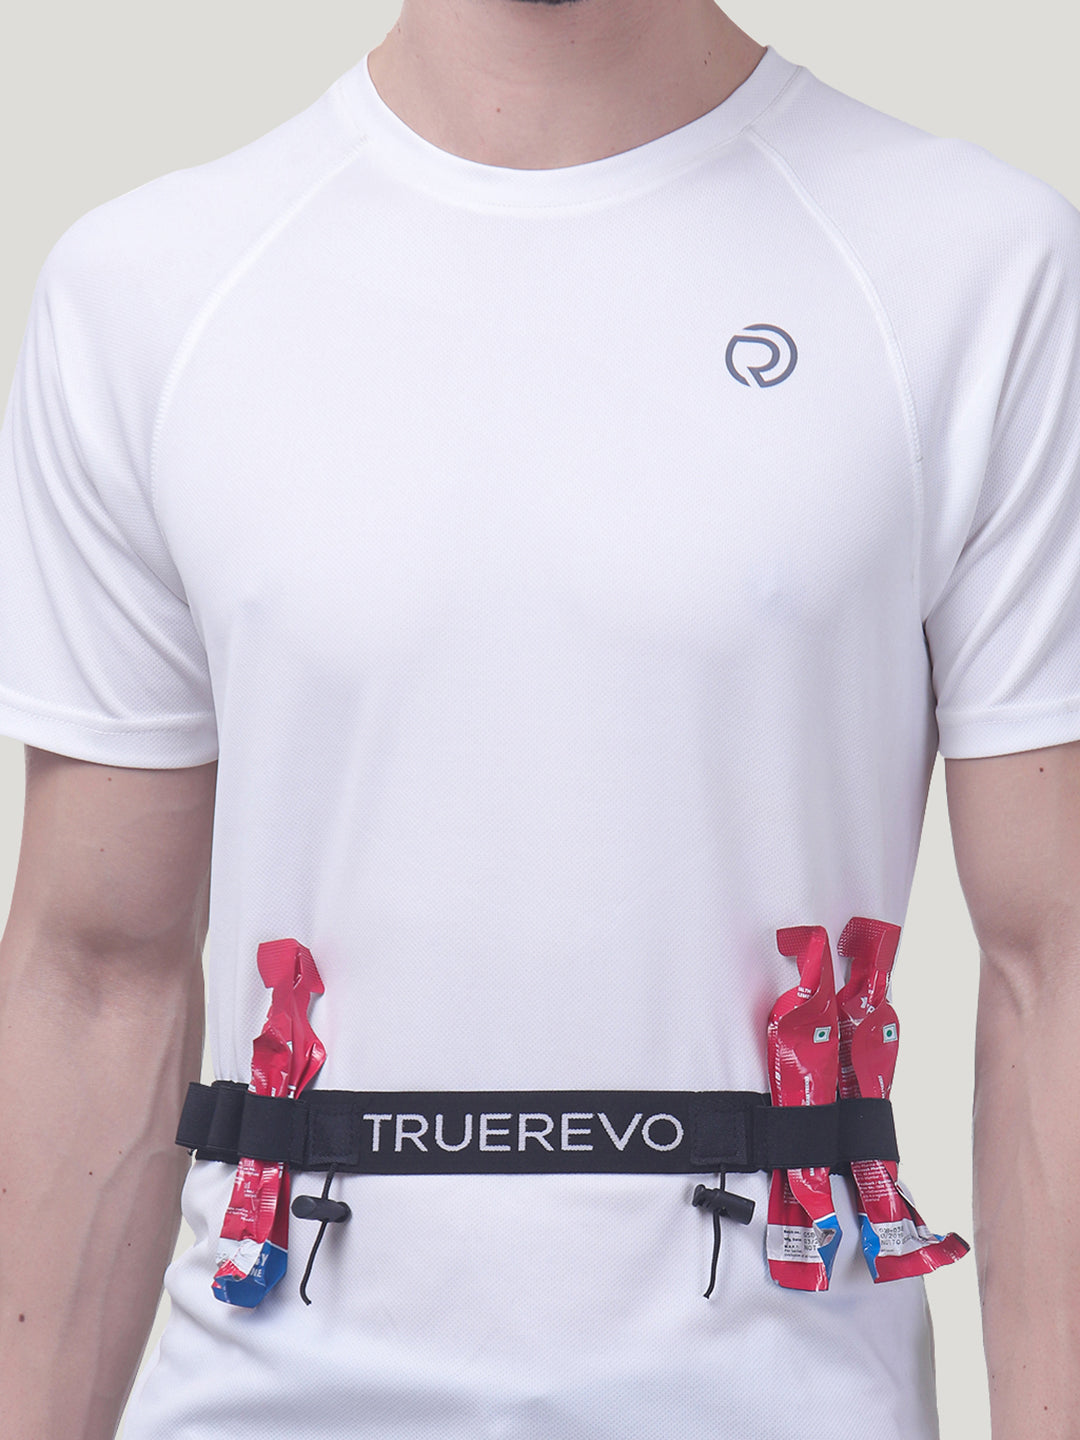 TRUEREVO Adjustable Bib Holder Belt with Gel and Bottle Holder 4 Loops Running Waist Belt for Marathon and Triathlon Accessories Pack of 2